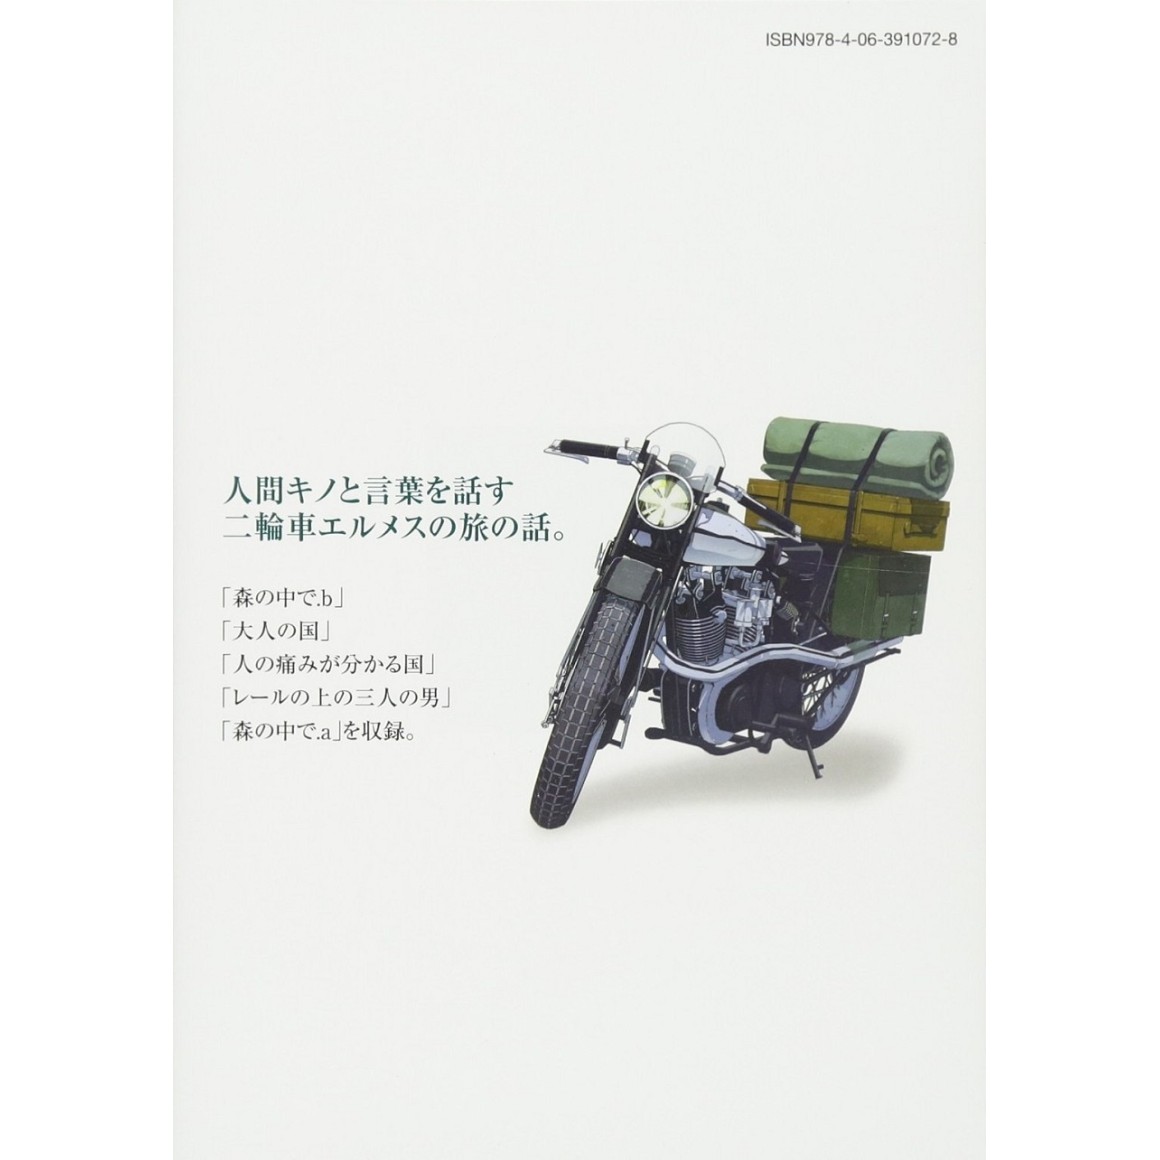 Kino no Tabi Volume 1: Book one of THE BEAUTIFUL WORLD - Keiichi Sigsawa:  9781598164558 - AbeBooks